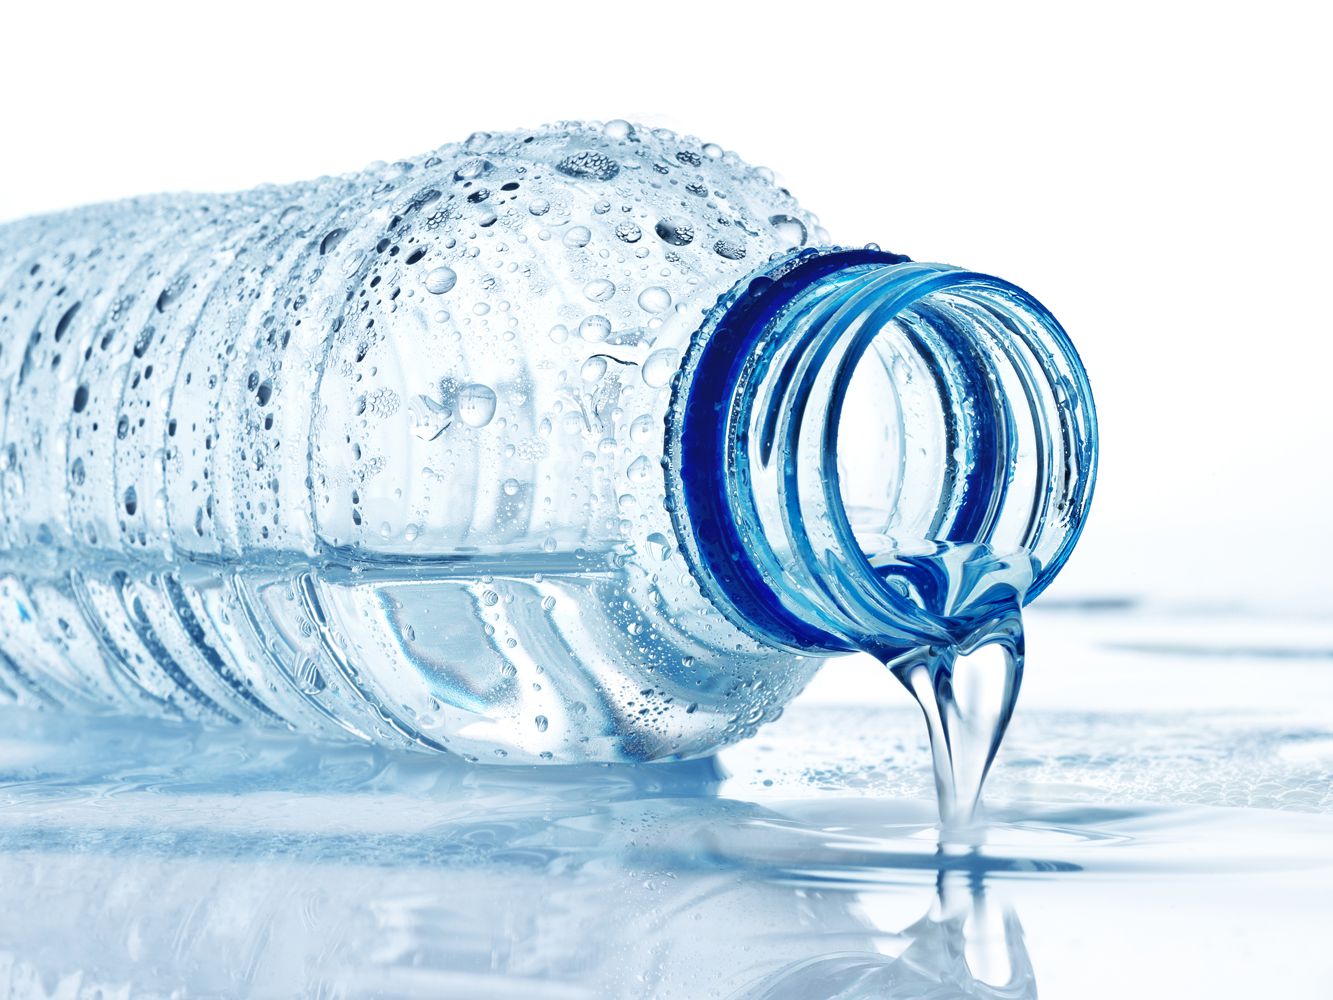 Вода киснет. Бутылка для воды. Бутилированная вода. Питьевая вода в бутылках. Красивые бутылки для воды.